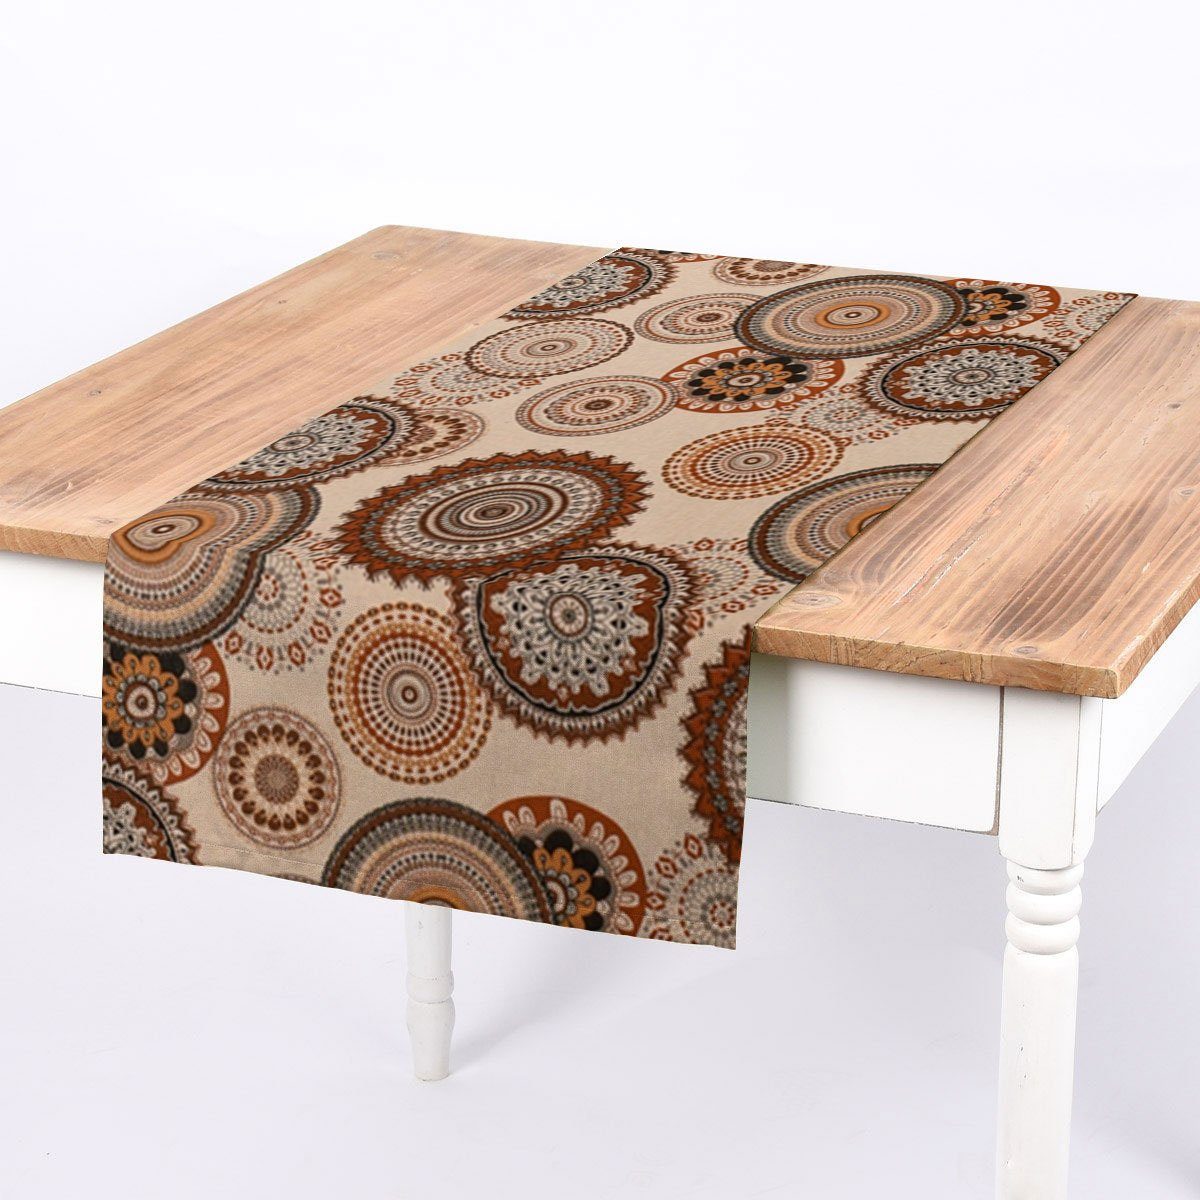 SCHÖNER LEBEN. Tischläufer SCHÖNER LEBEN. Tischläufer Leinenlook Geometric  Mandala natur braun, handmade | Mitteldecken